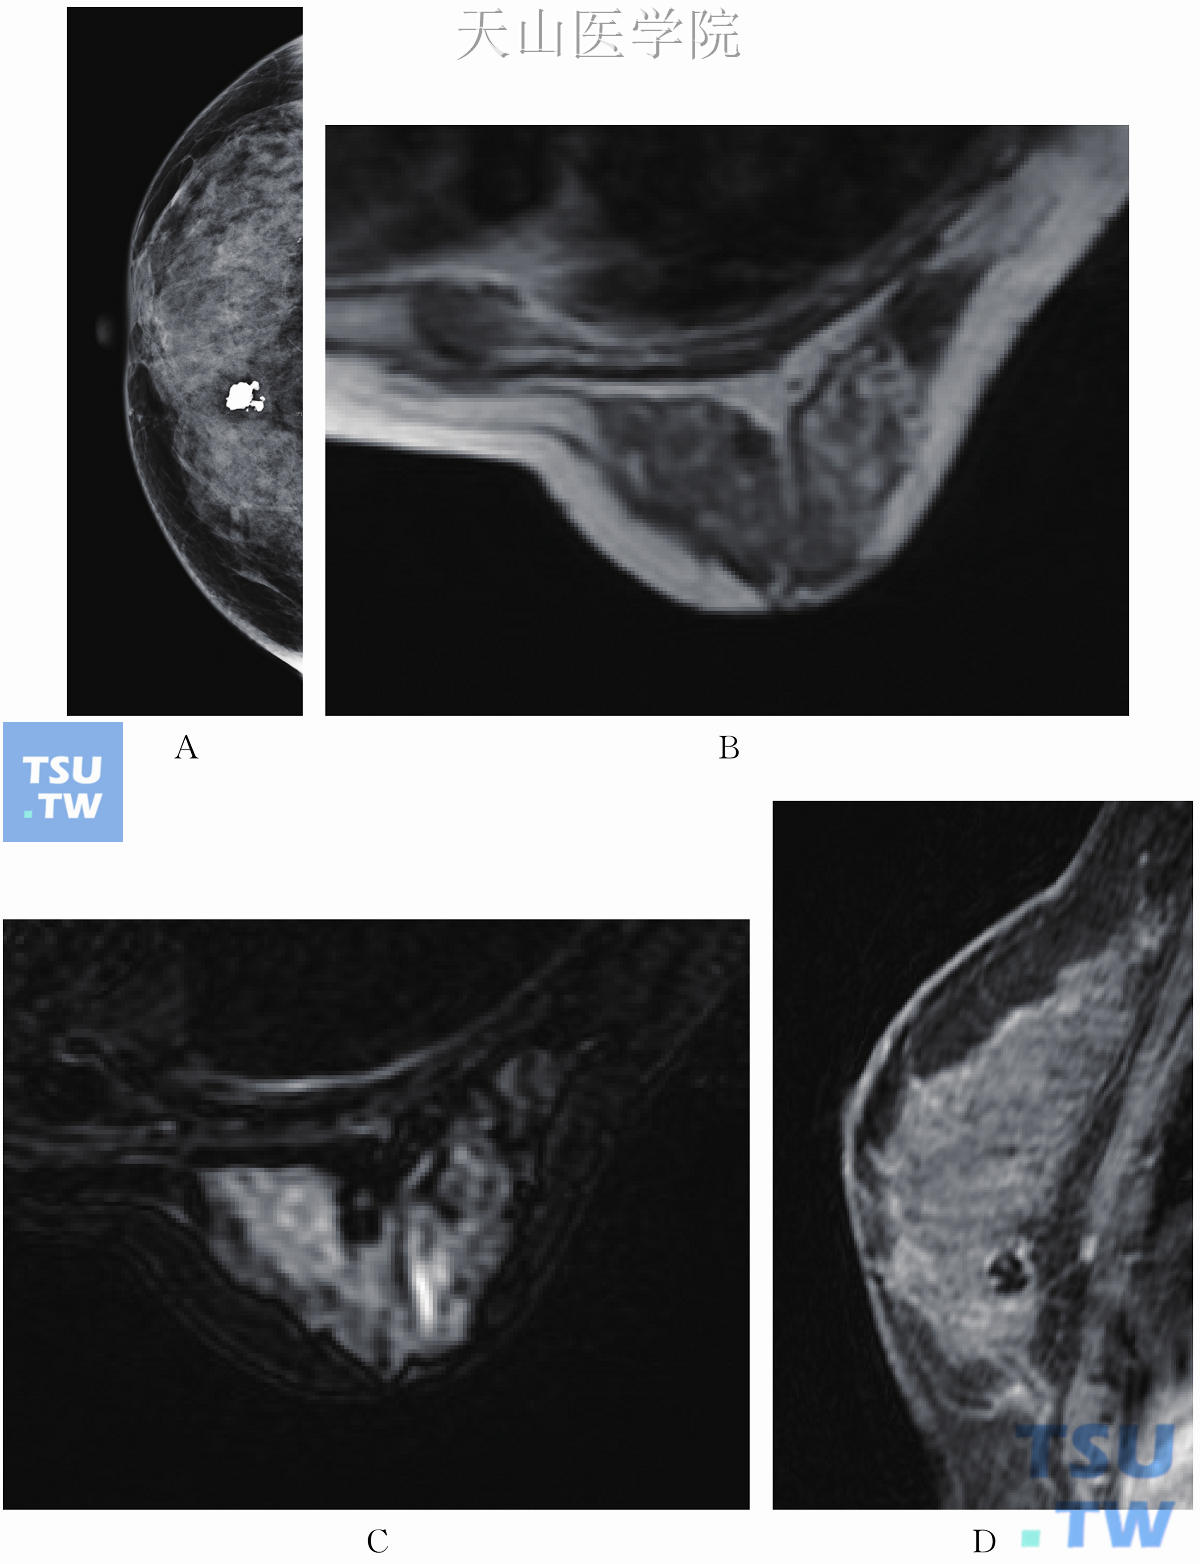 良性钙化。钼靶CC位示右乳内侧粗糙钙化（A），BI-RADS2，T1WI为低信号（B），T2WI为低信号（C），矢状位增强未见明显强化（D）